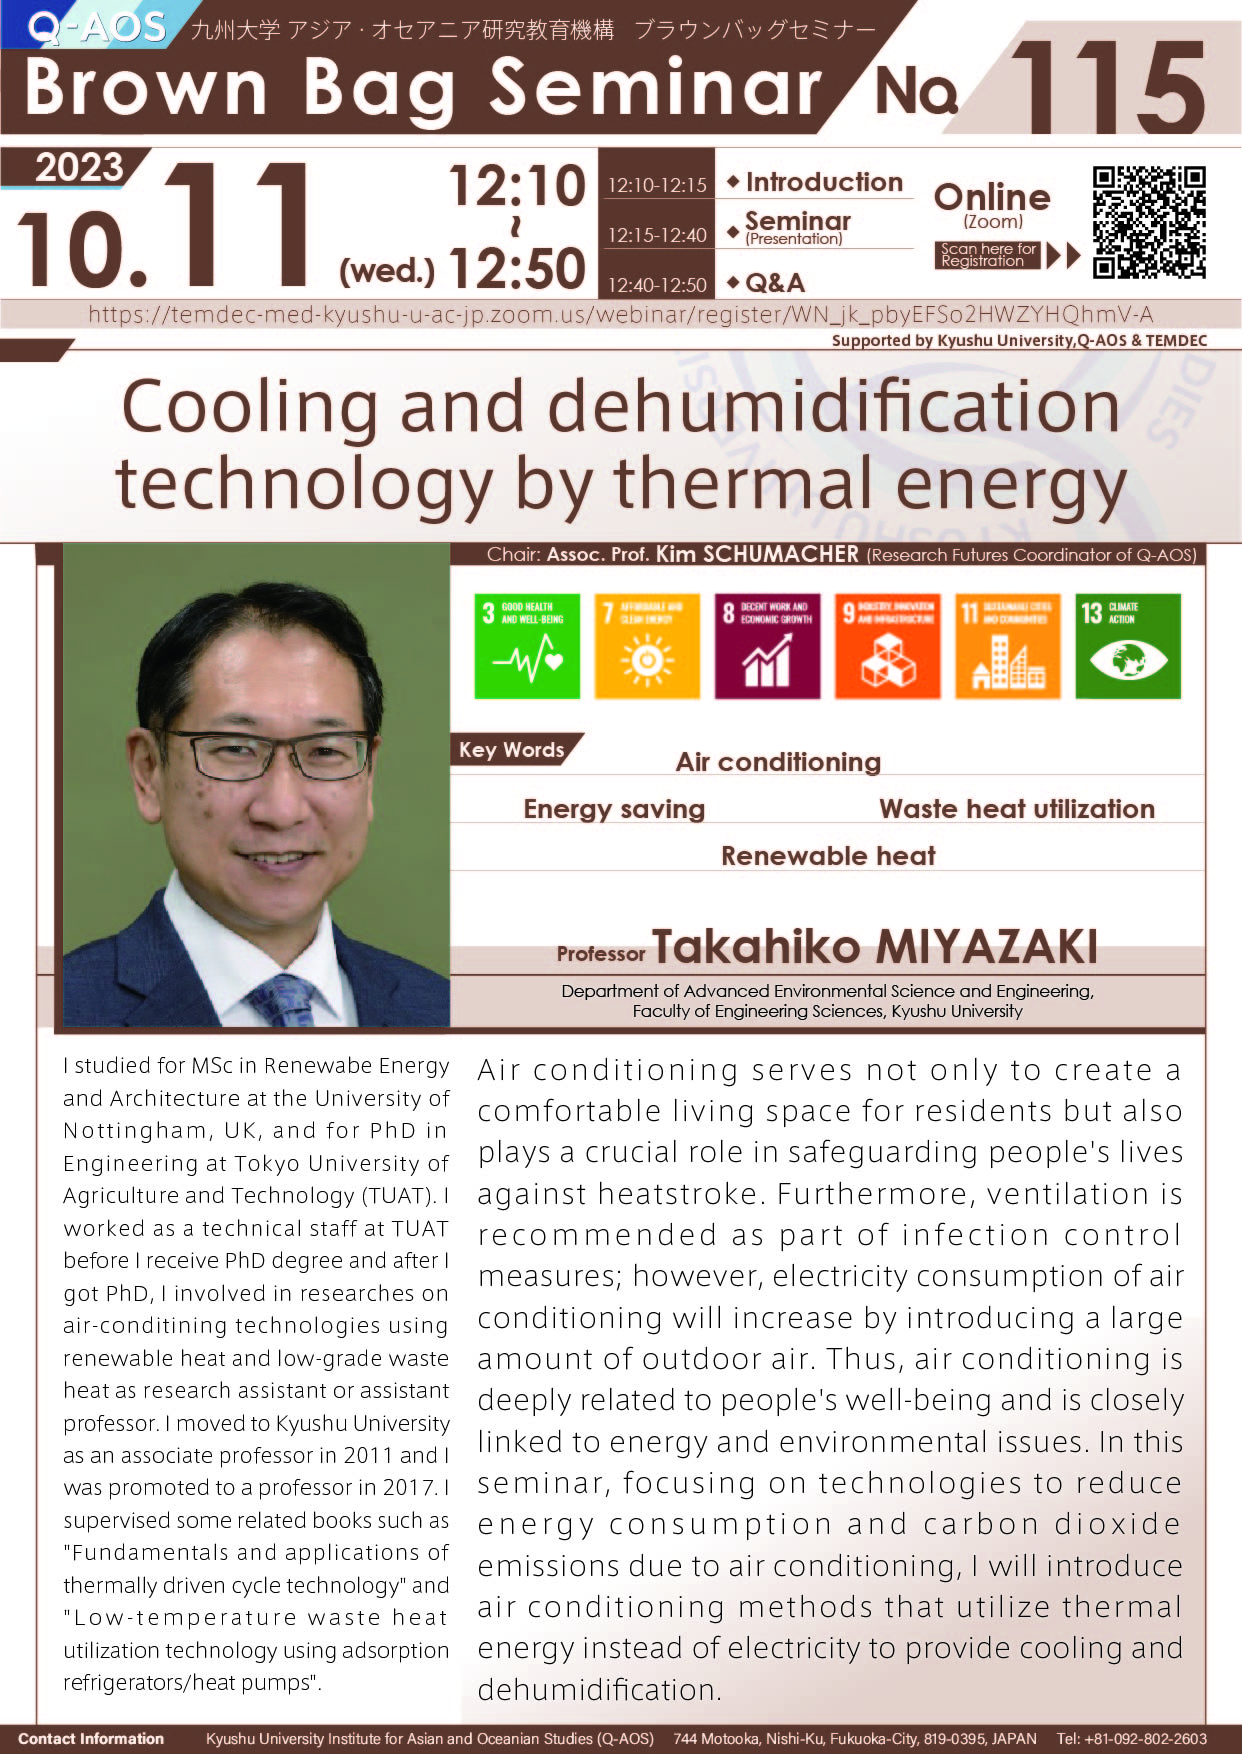 アイキャッチ画像：Q-AOS Brown Bag Seminar Series The 115th Seminar “Cooling and dehumidification technology driven by thermal energy”